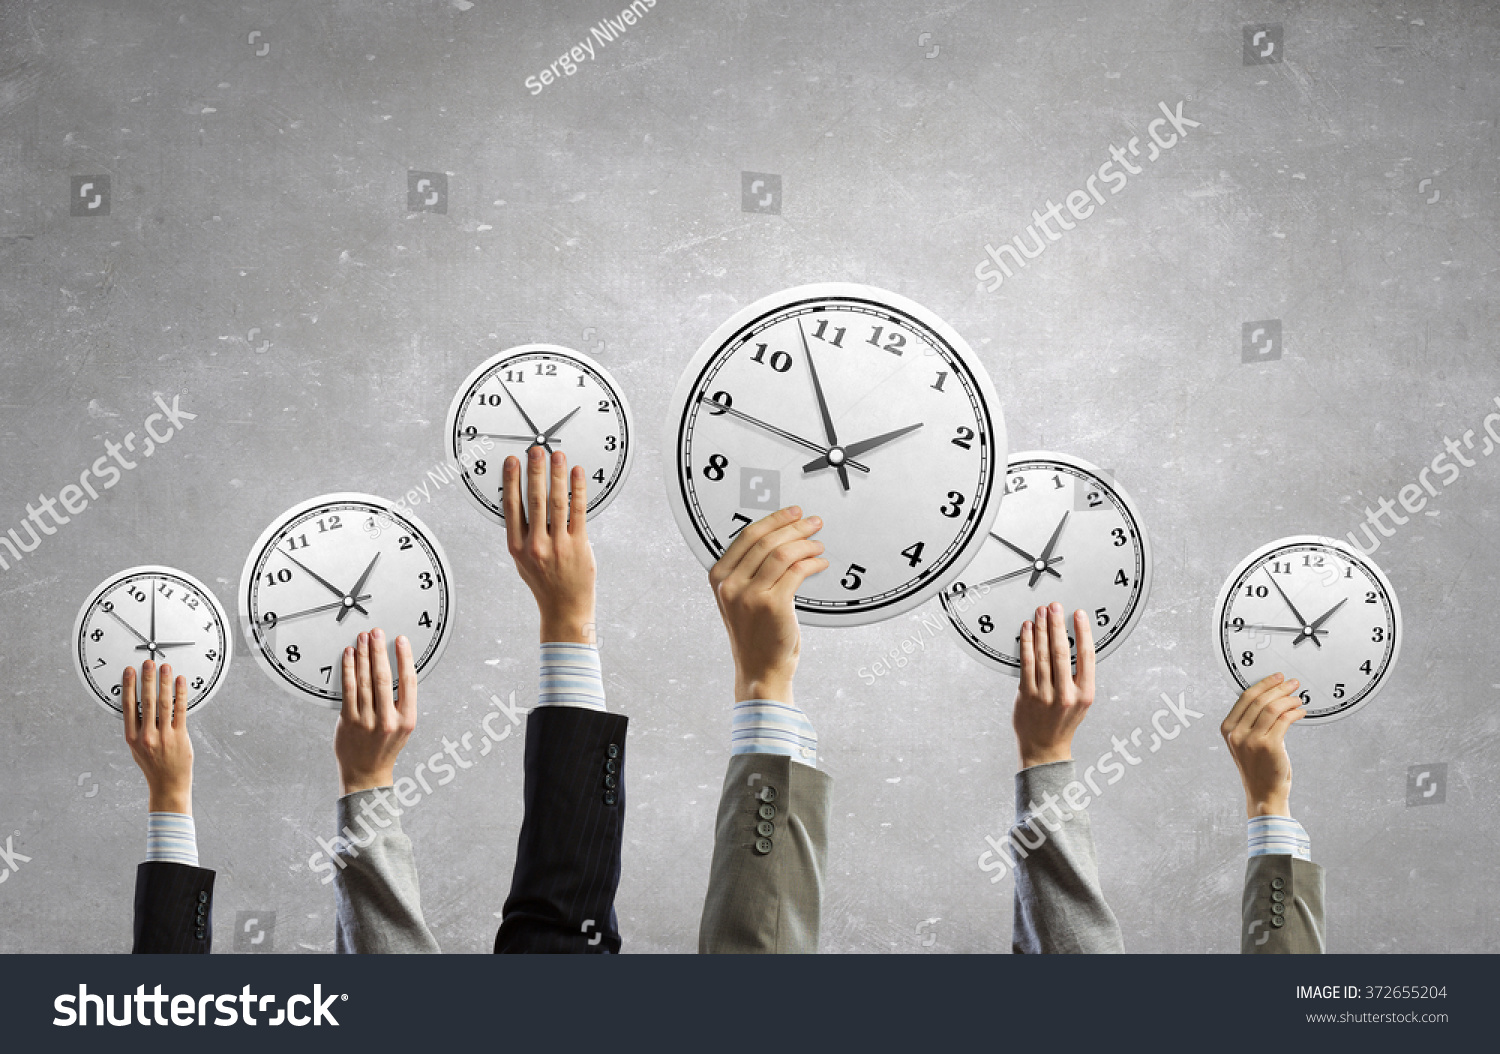 Любое подходящее время. Тайм-менеджмент. Умение планировать и управлять временем. Тренинг управление временем. Корпоративный тайм-менеджмент.